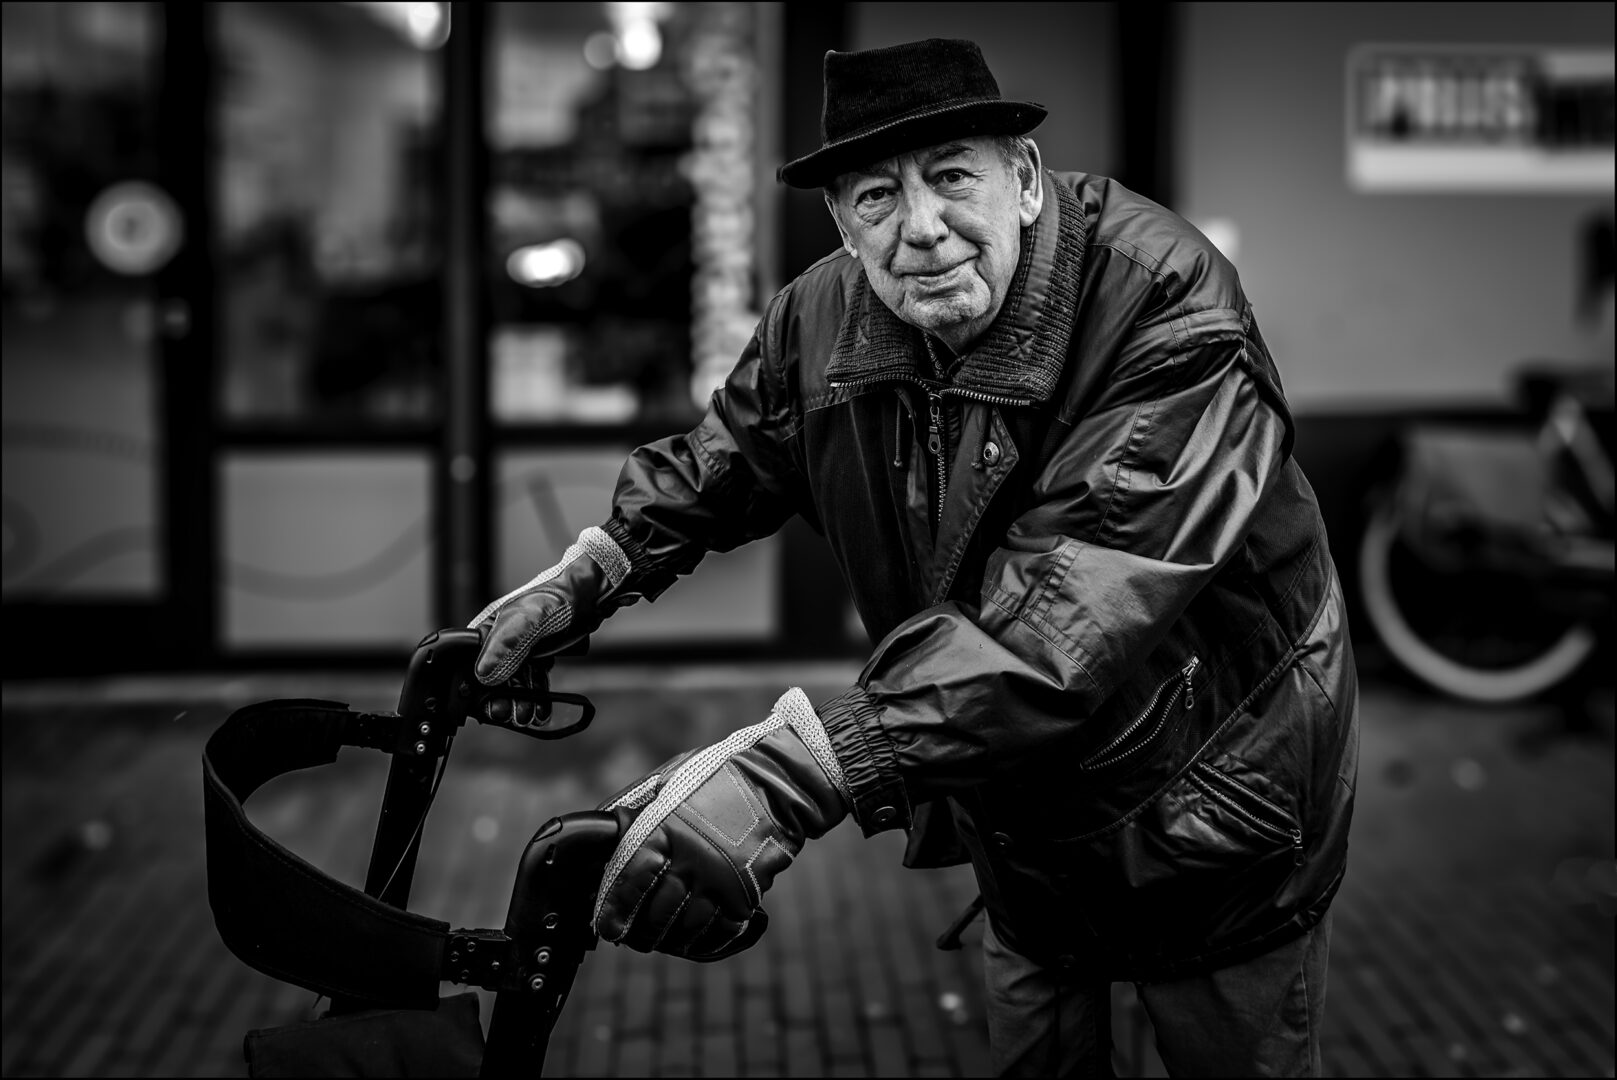 Themagroep Straatfotografie, een ochtend in Eindhoven